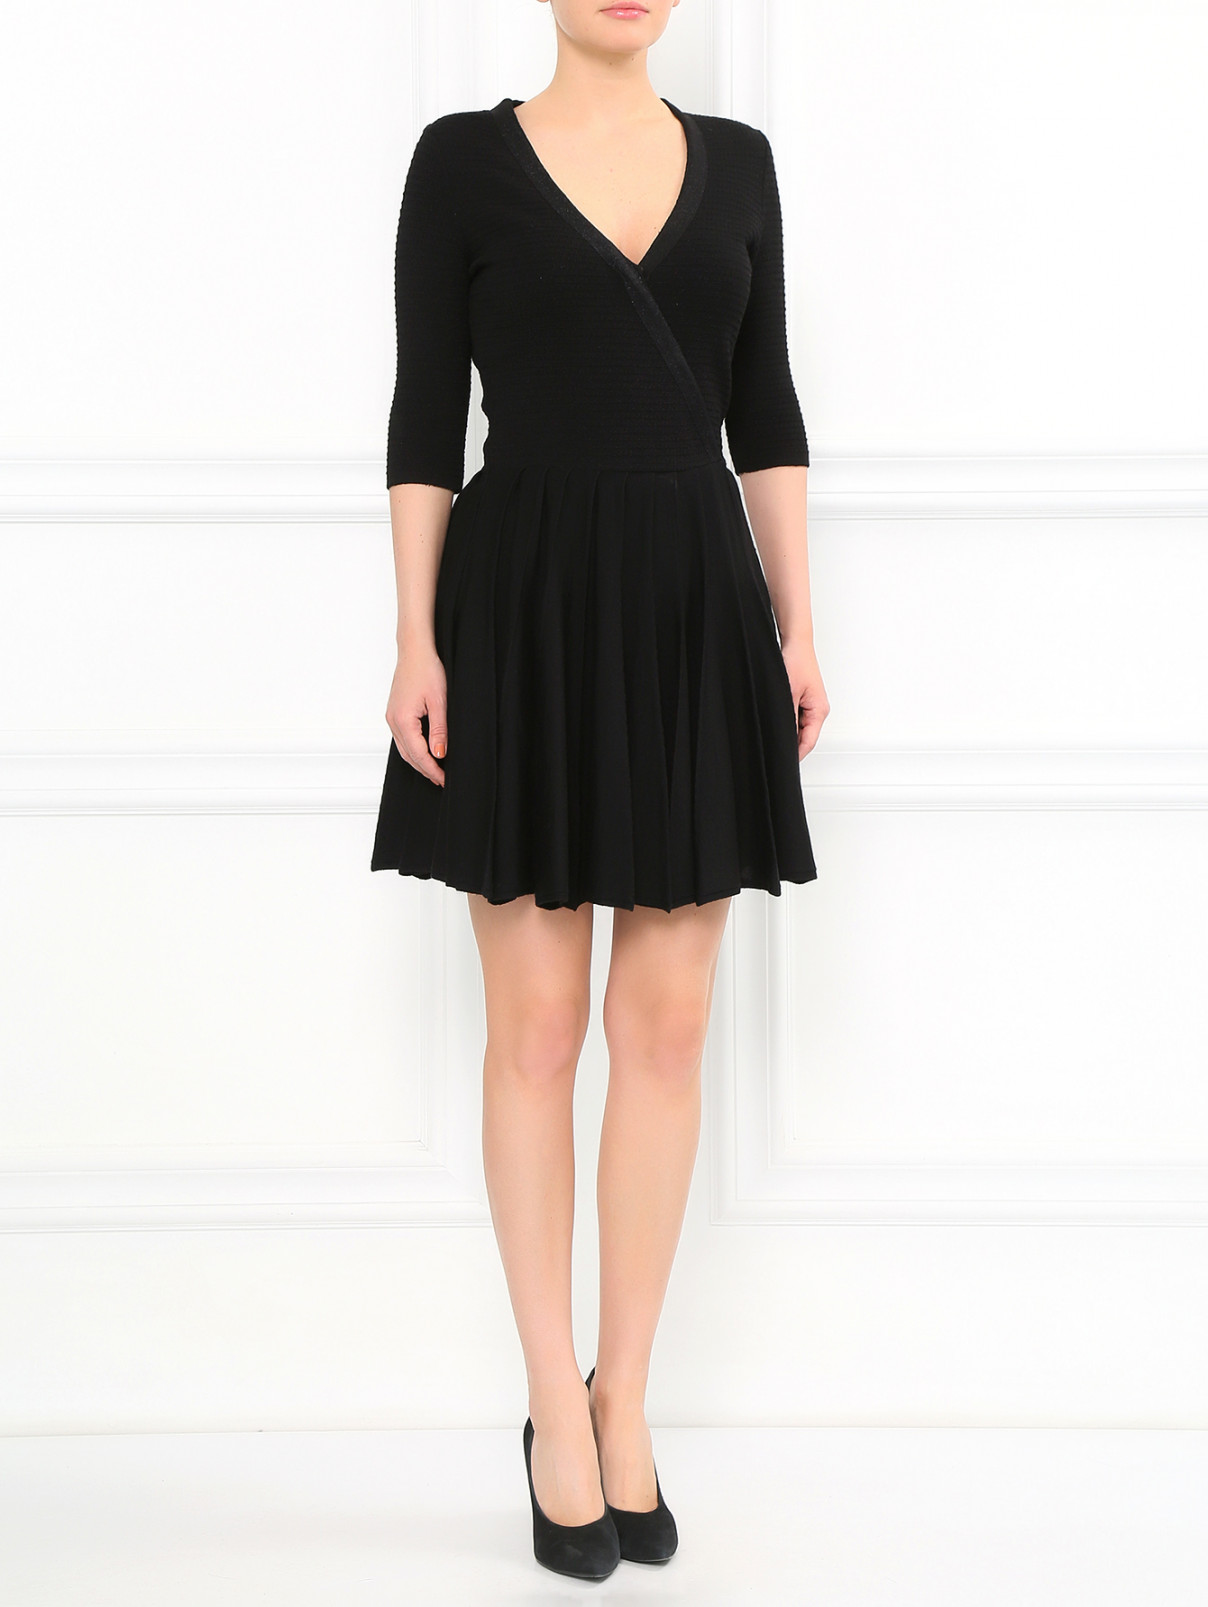 Трикотажное платье-мини с запахом Lil pour l'Autre  –  Модель Общий вид  – Цвет:  Черный